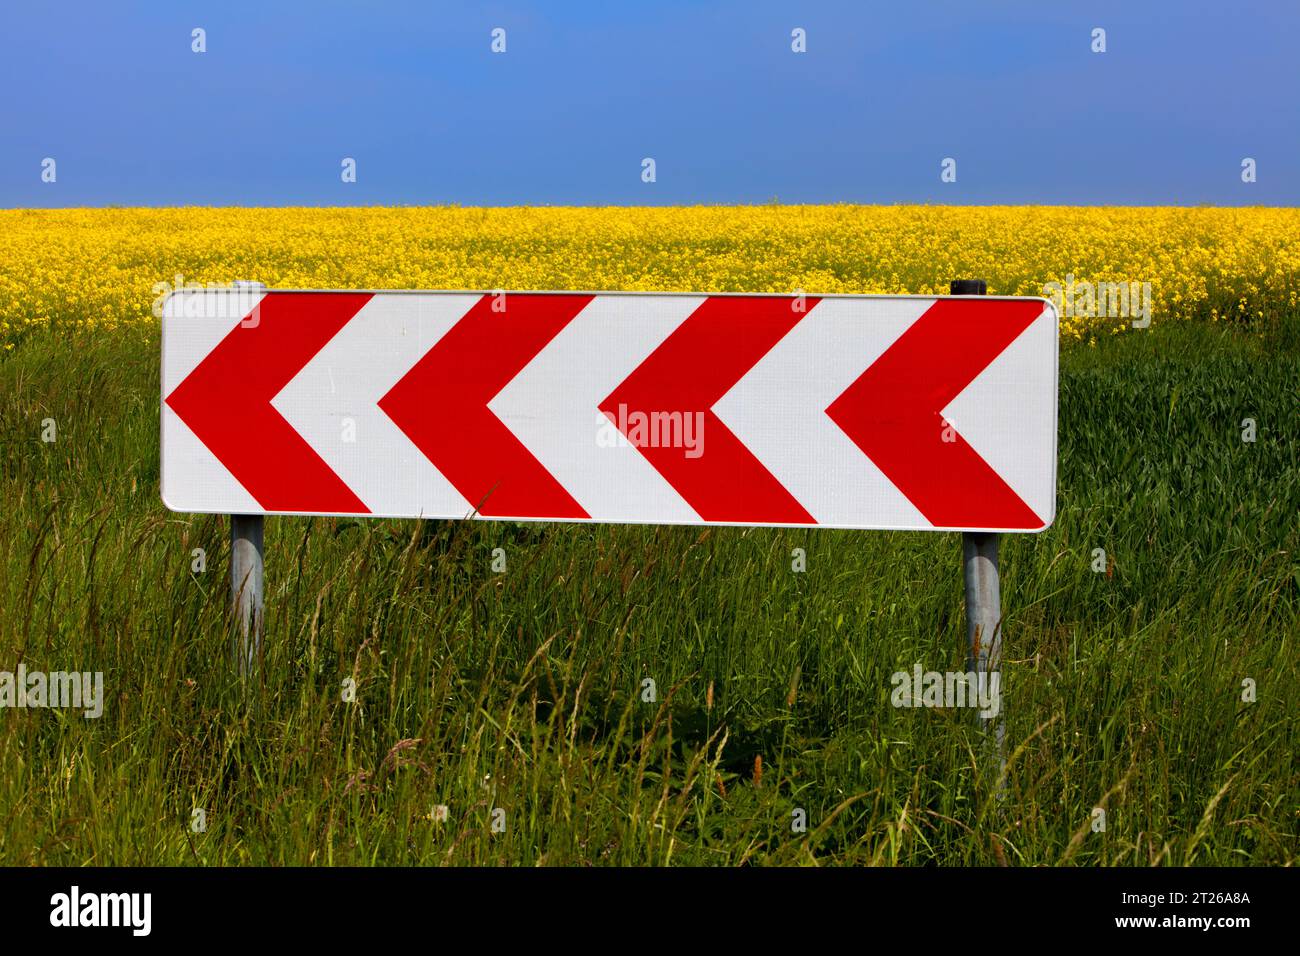 Paysage agricole avec un panneau de signalisation, près d'Uslar, district de Northeim, Weser Uplands, sud de la Basse-Saxe, Allemagne, Europe Banque D'Images